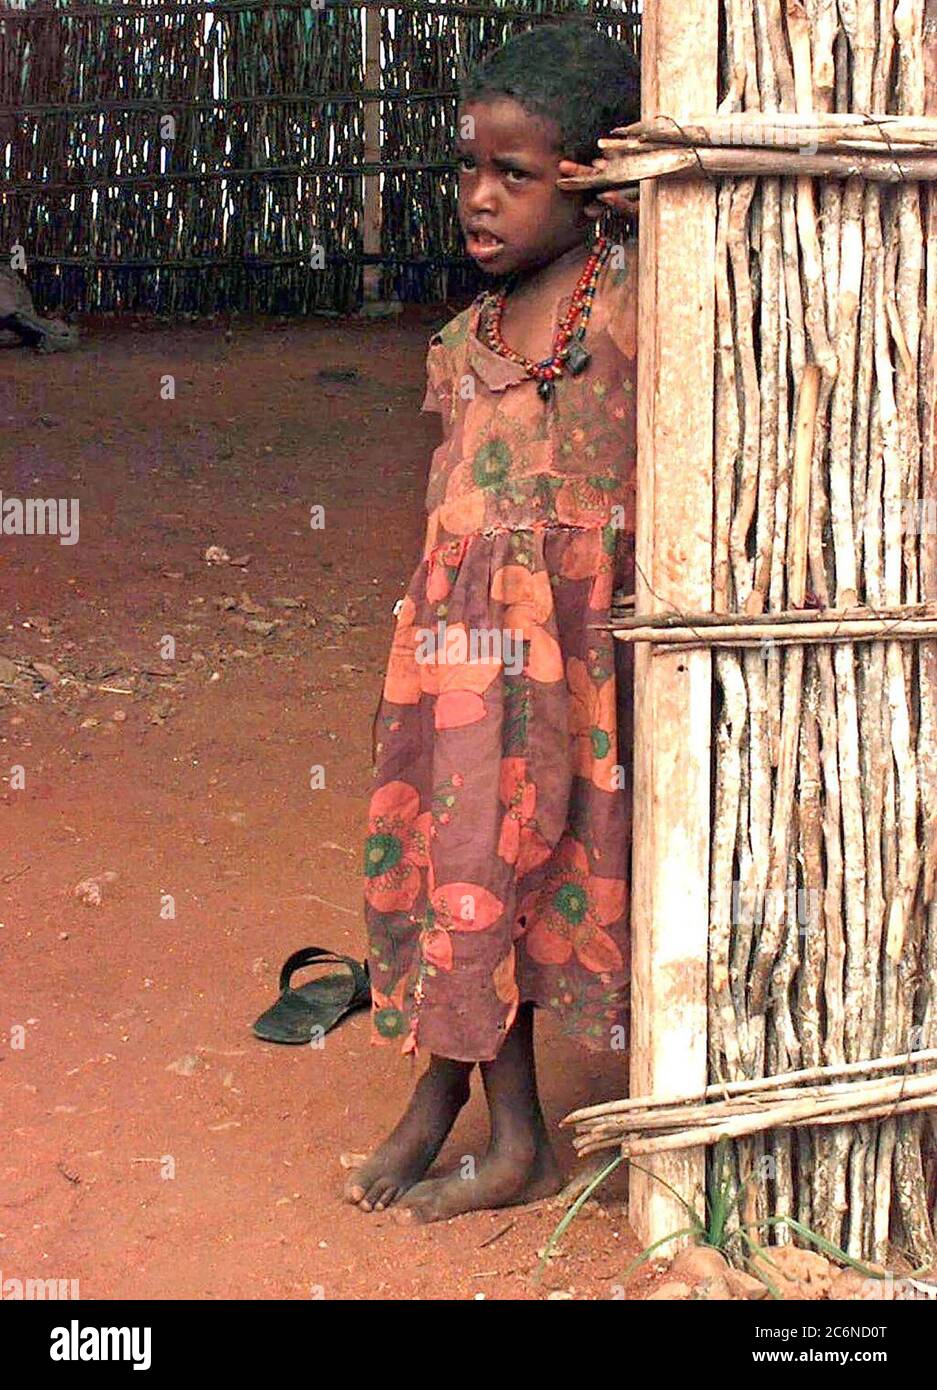 1992 - dritto, medium close-up di una ragazza somala, circa sei o sette anni. Indossa un abito fiorito e si appoggia contro l'ingresso di una capanna di bambù con un pavimento di immondizia. Foto Stock